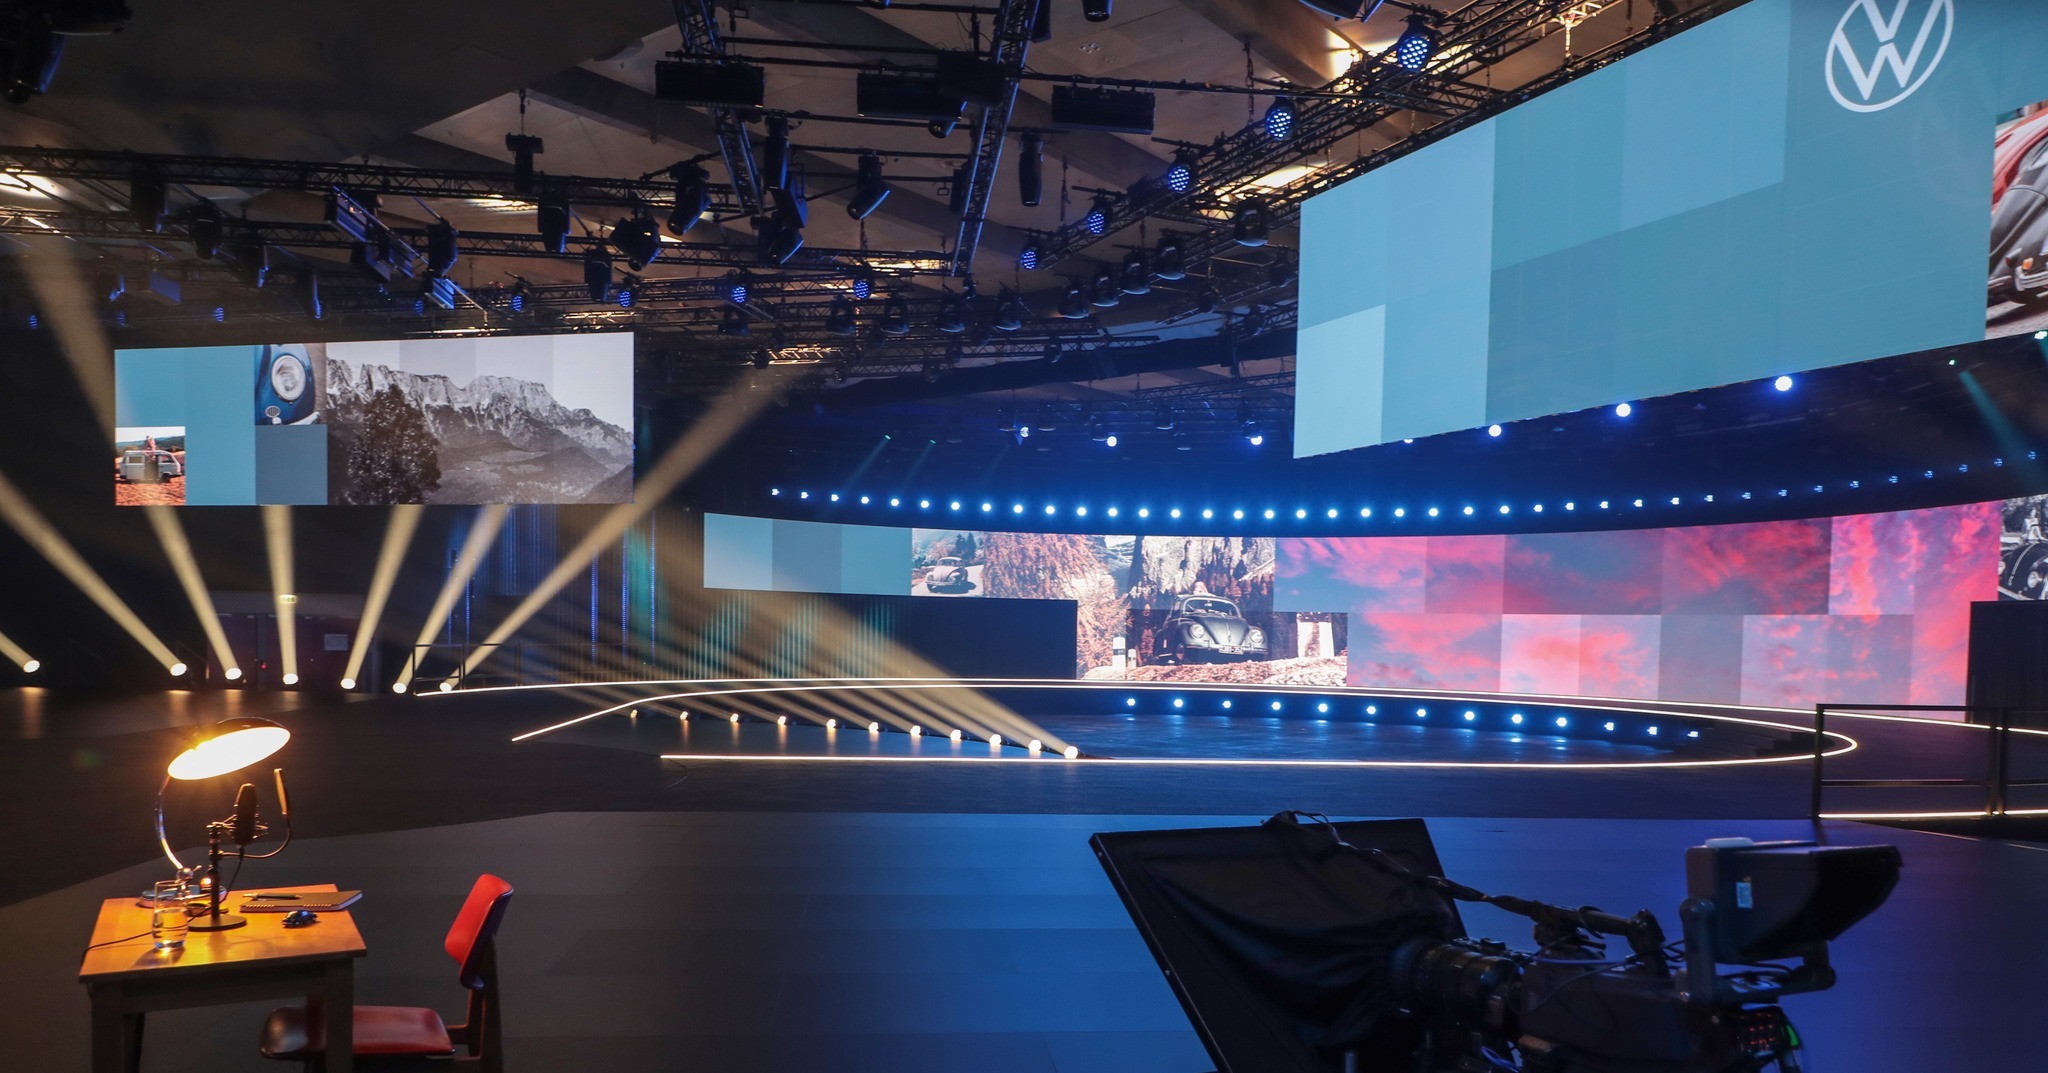 En tant que fournisseur de premier plan de technologies événementielles, PRG a fourni le gréement, l'éclairage, la technologie audio et vidéo et la technologie d'interphone pour célébrer la première mondiale du show-car "ID.2all" de VW à Hambourg.